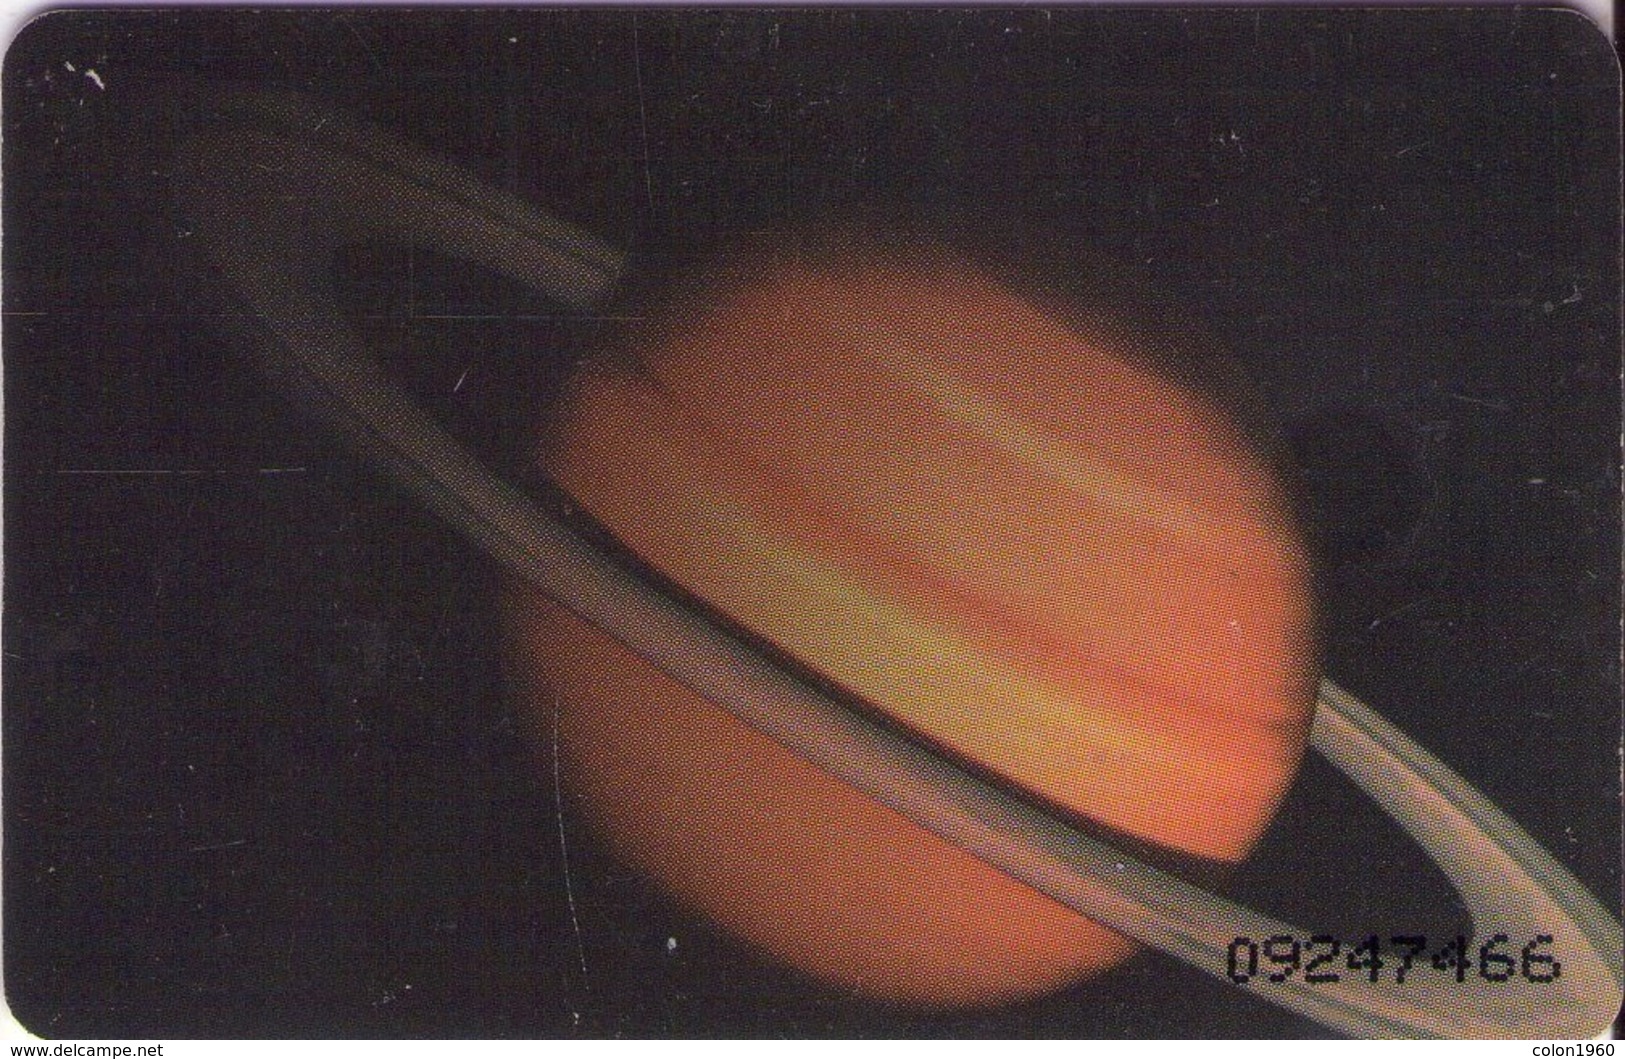 VENEZUELA. CAN2-0094-2. SISTEMA SOLAR 6/10, SATURNO. 10-1995. (484) - Espacio